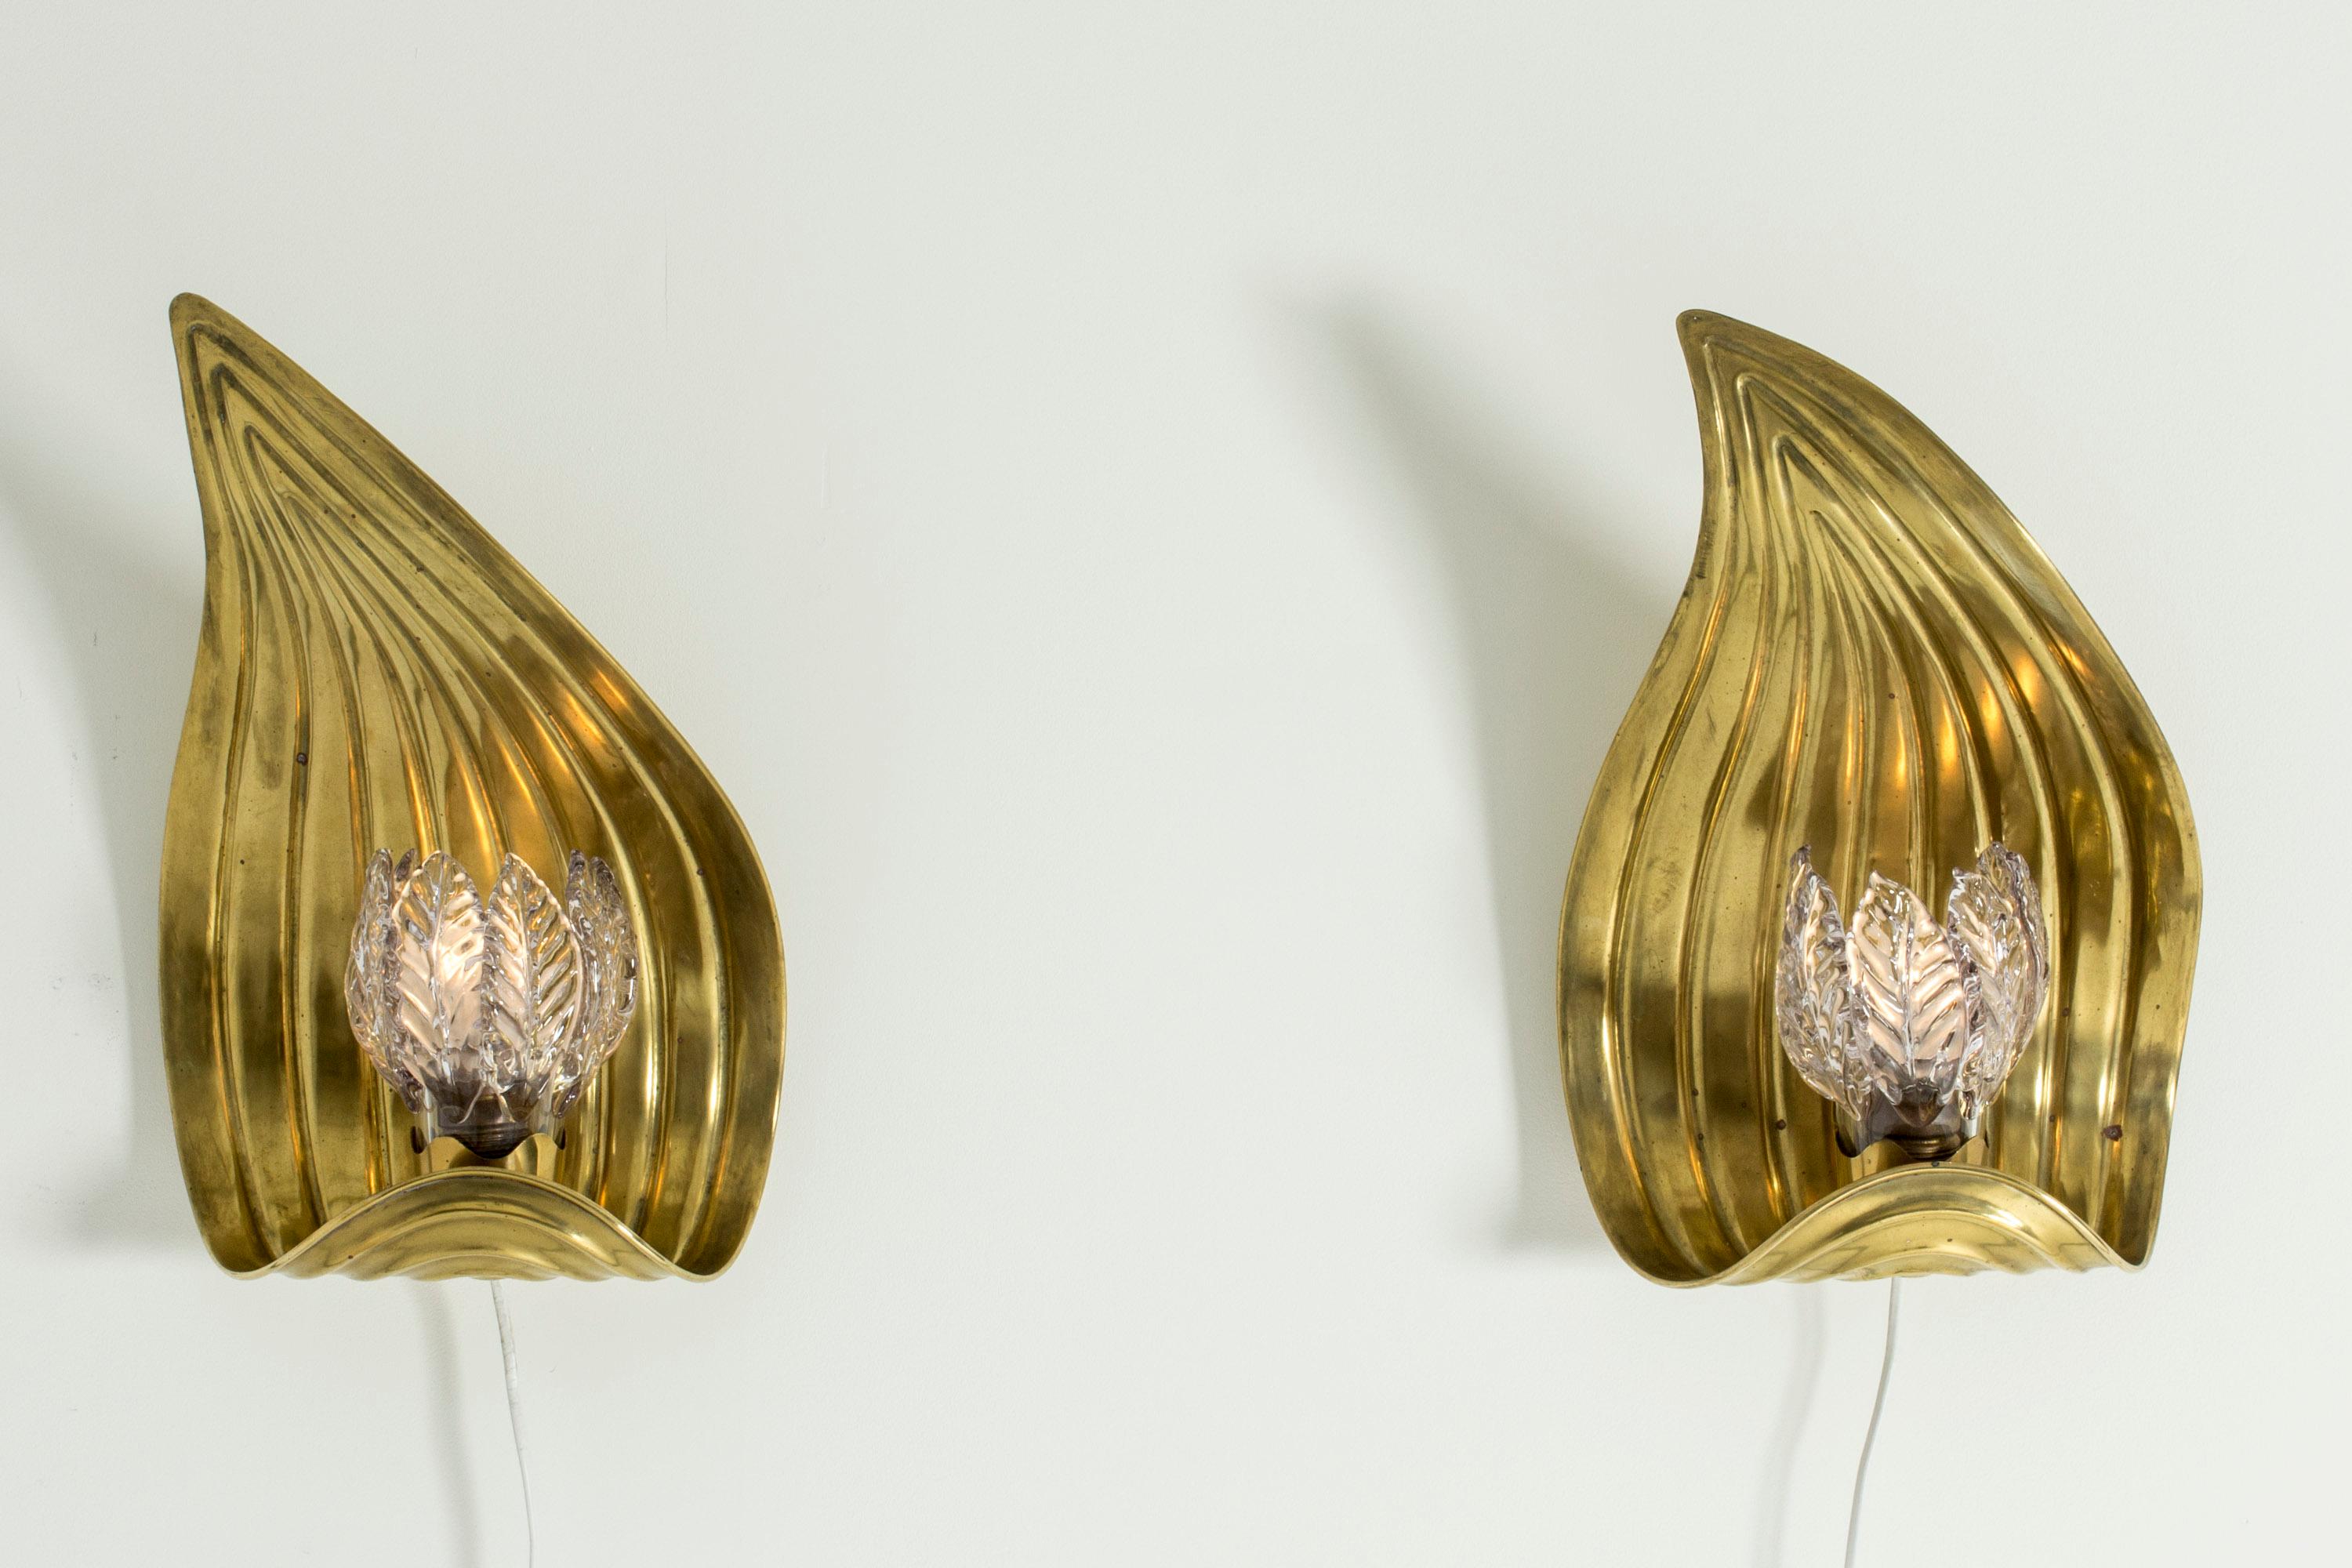 Scandinavian Modern Pair of Glass and Brass Swedish Modern Wall Lights, 1940s For Sale